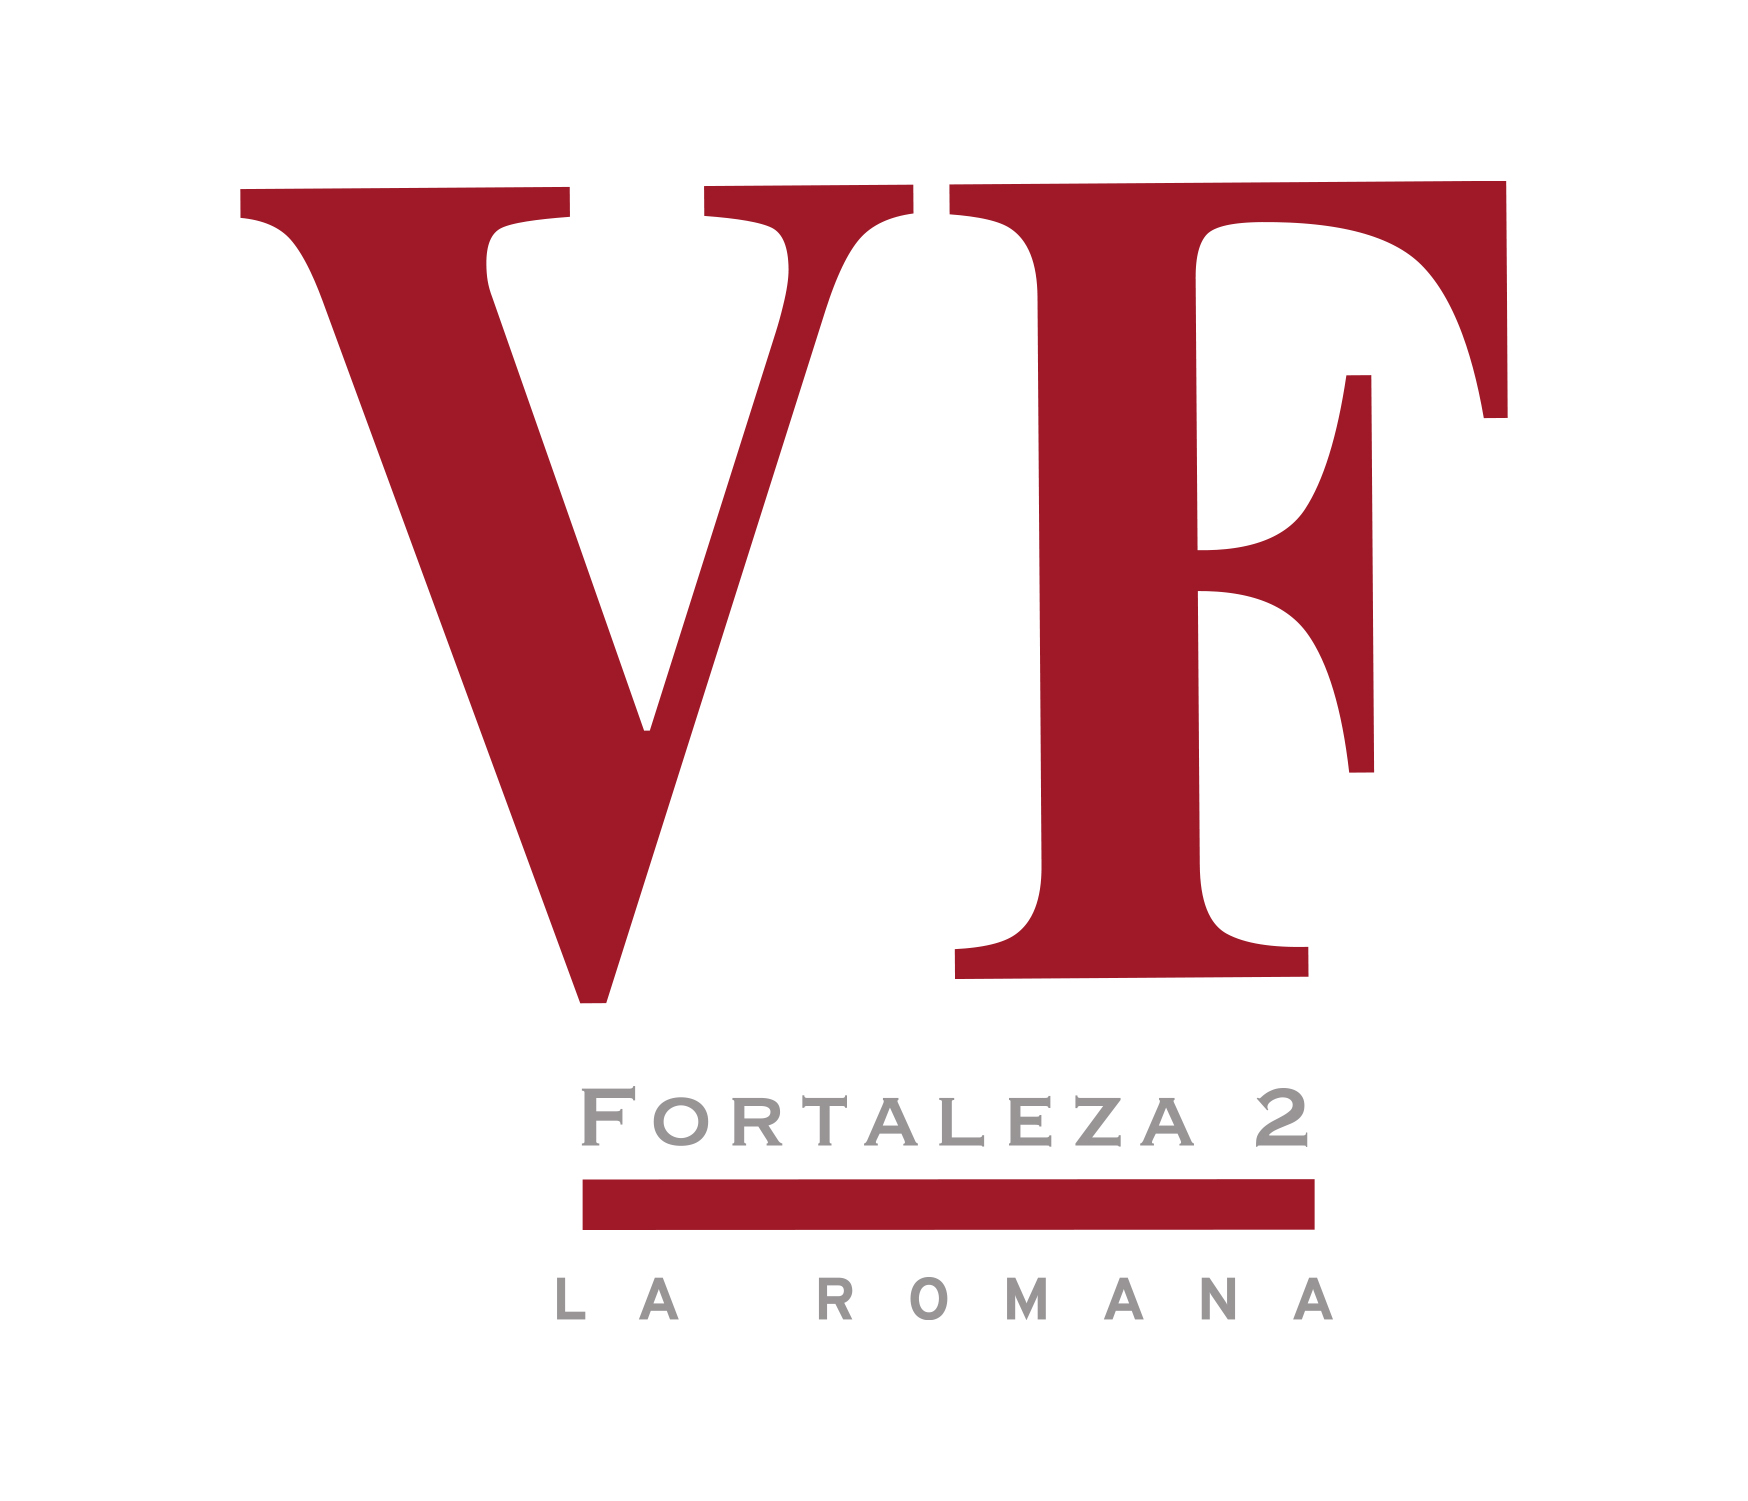 Vegafina Fortaleza 2